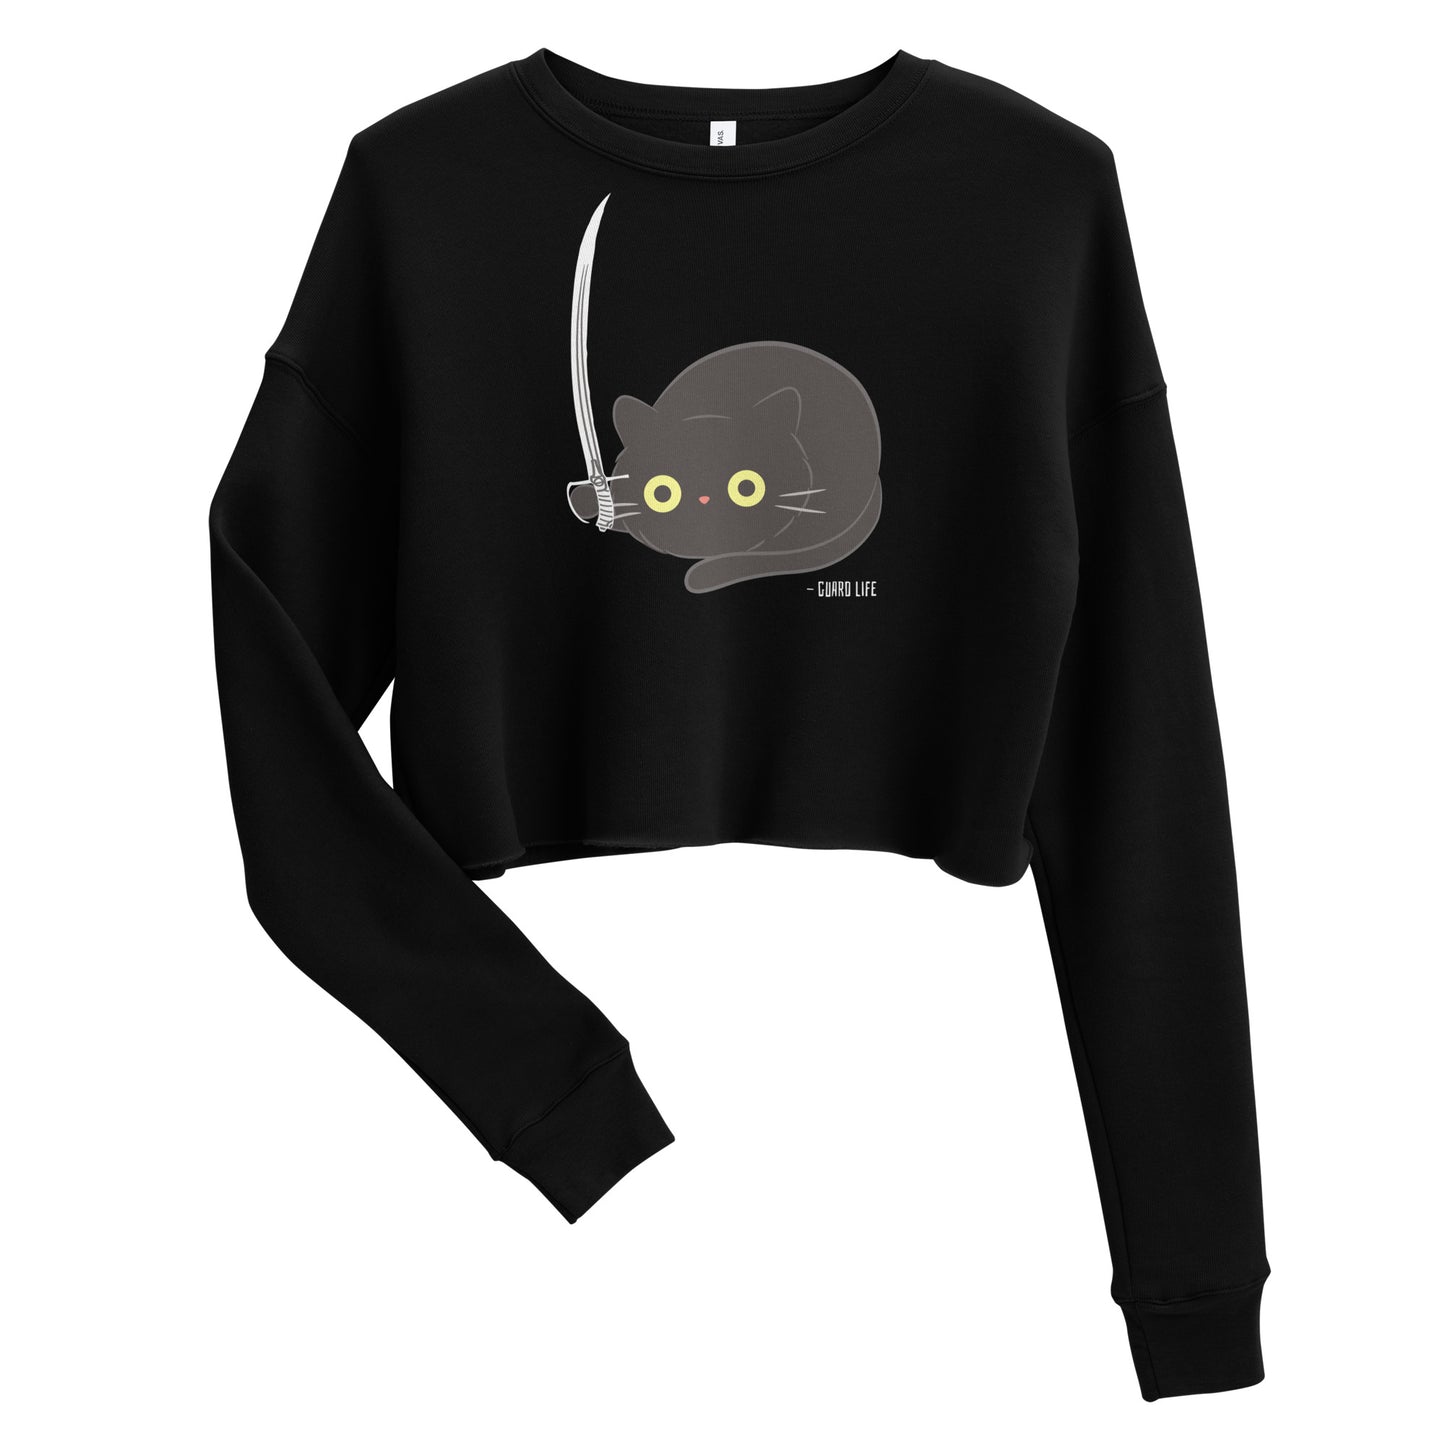 Cute Black Cat plays with Sabre Crop Sweatshirt